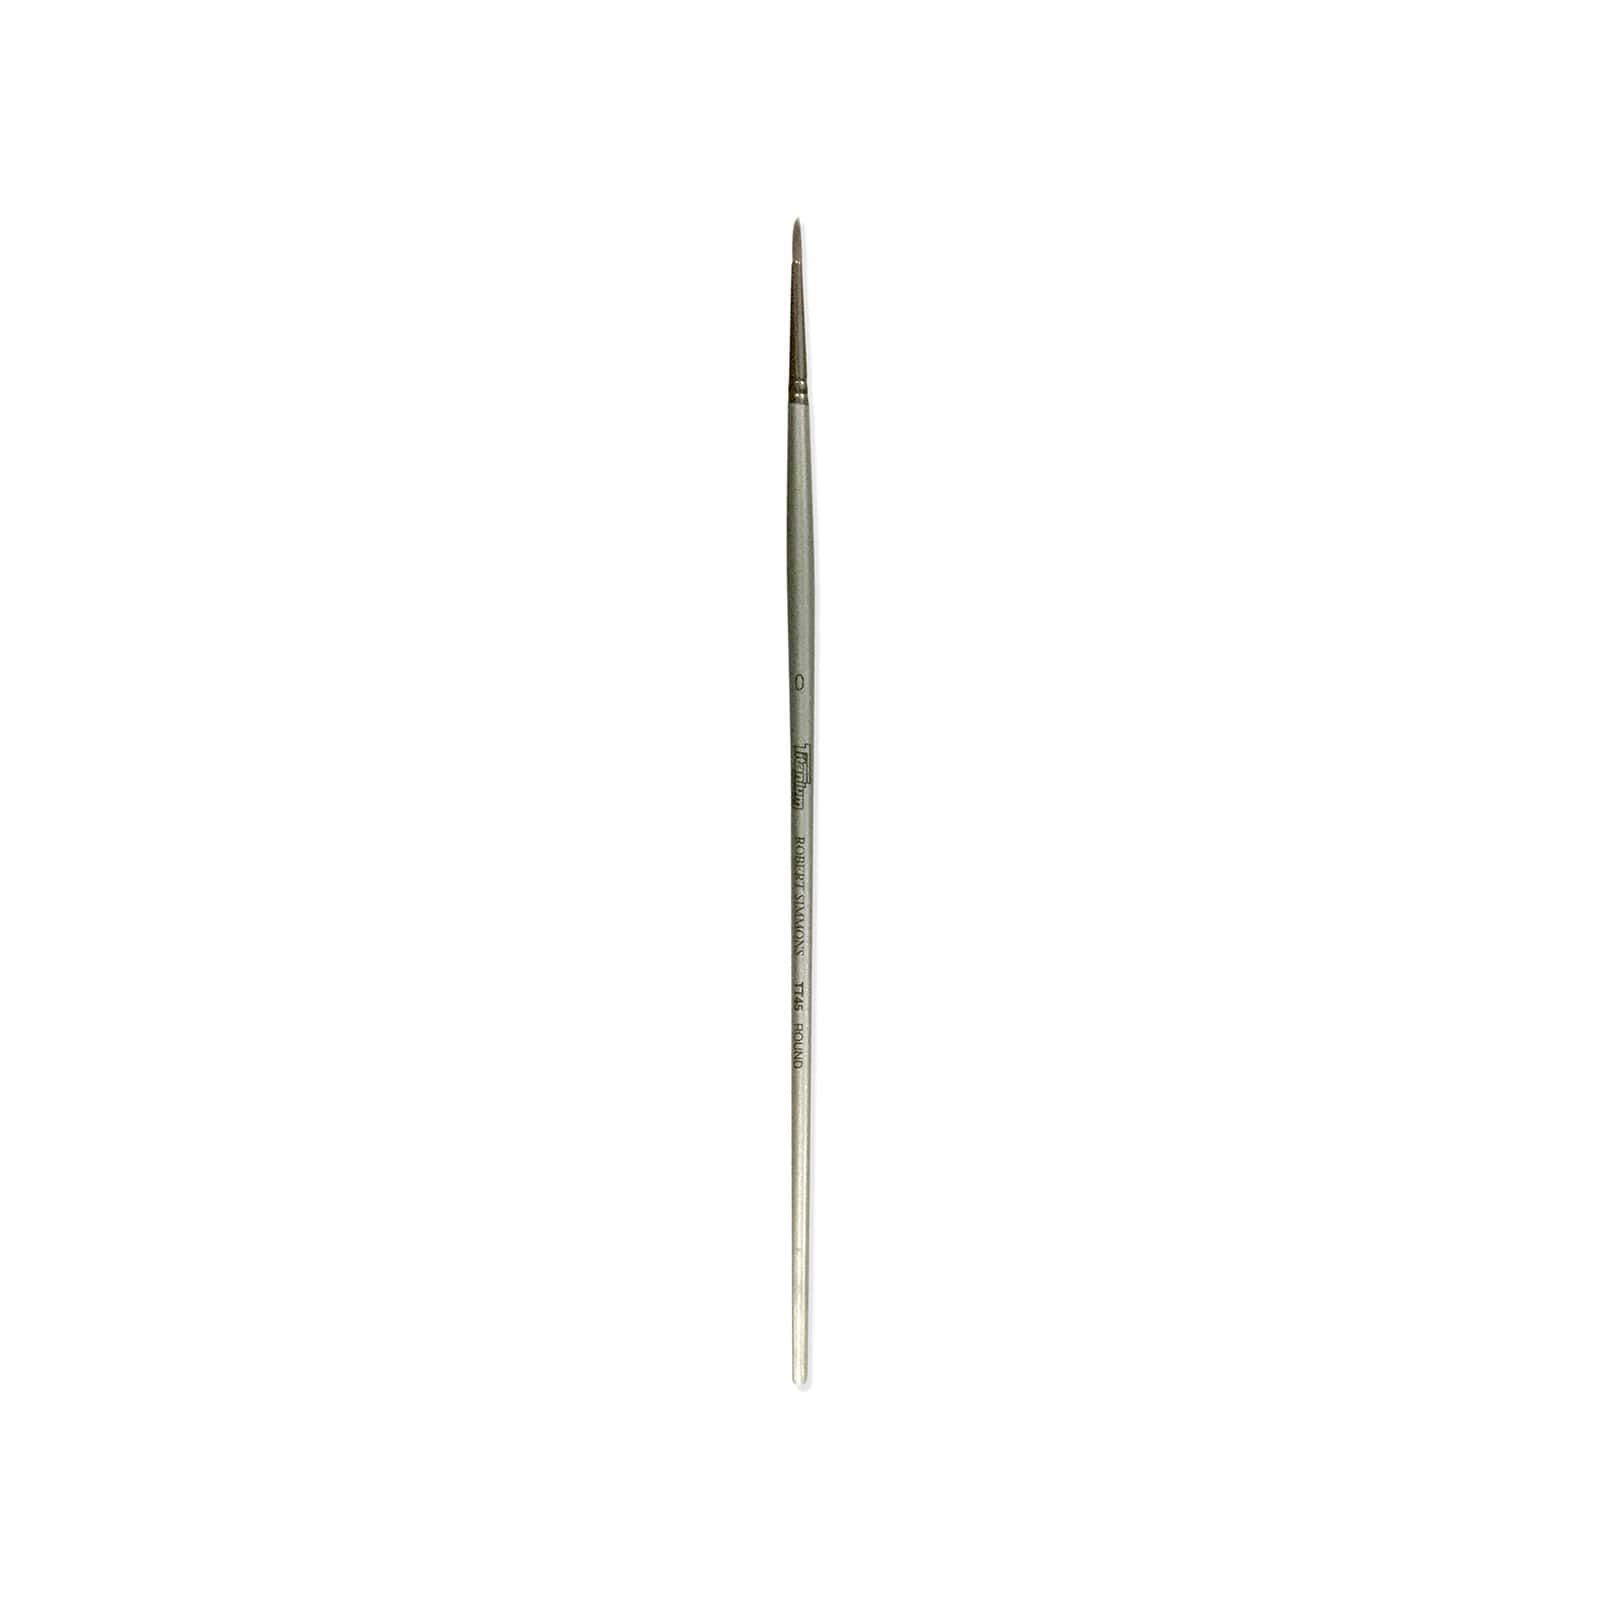 Robert Simmons Titanium Long Handle Round Brush, Size 0